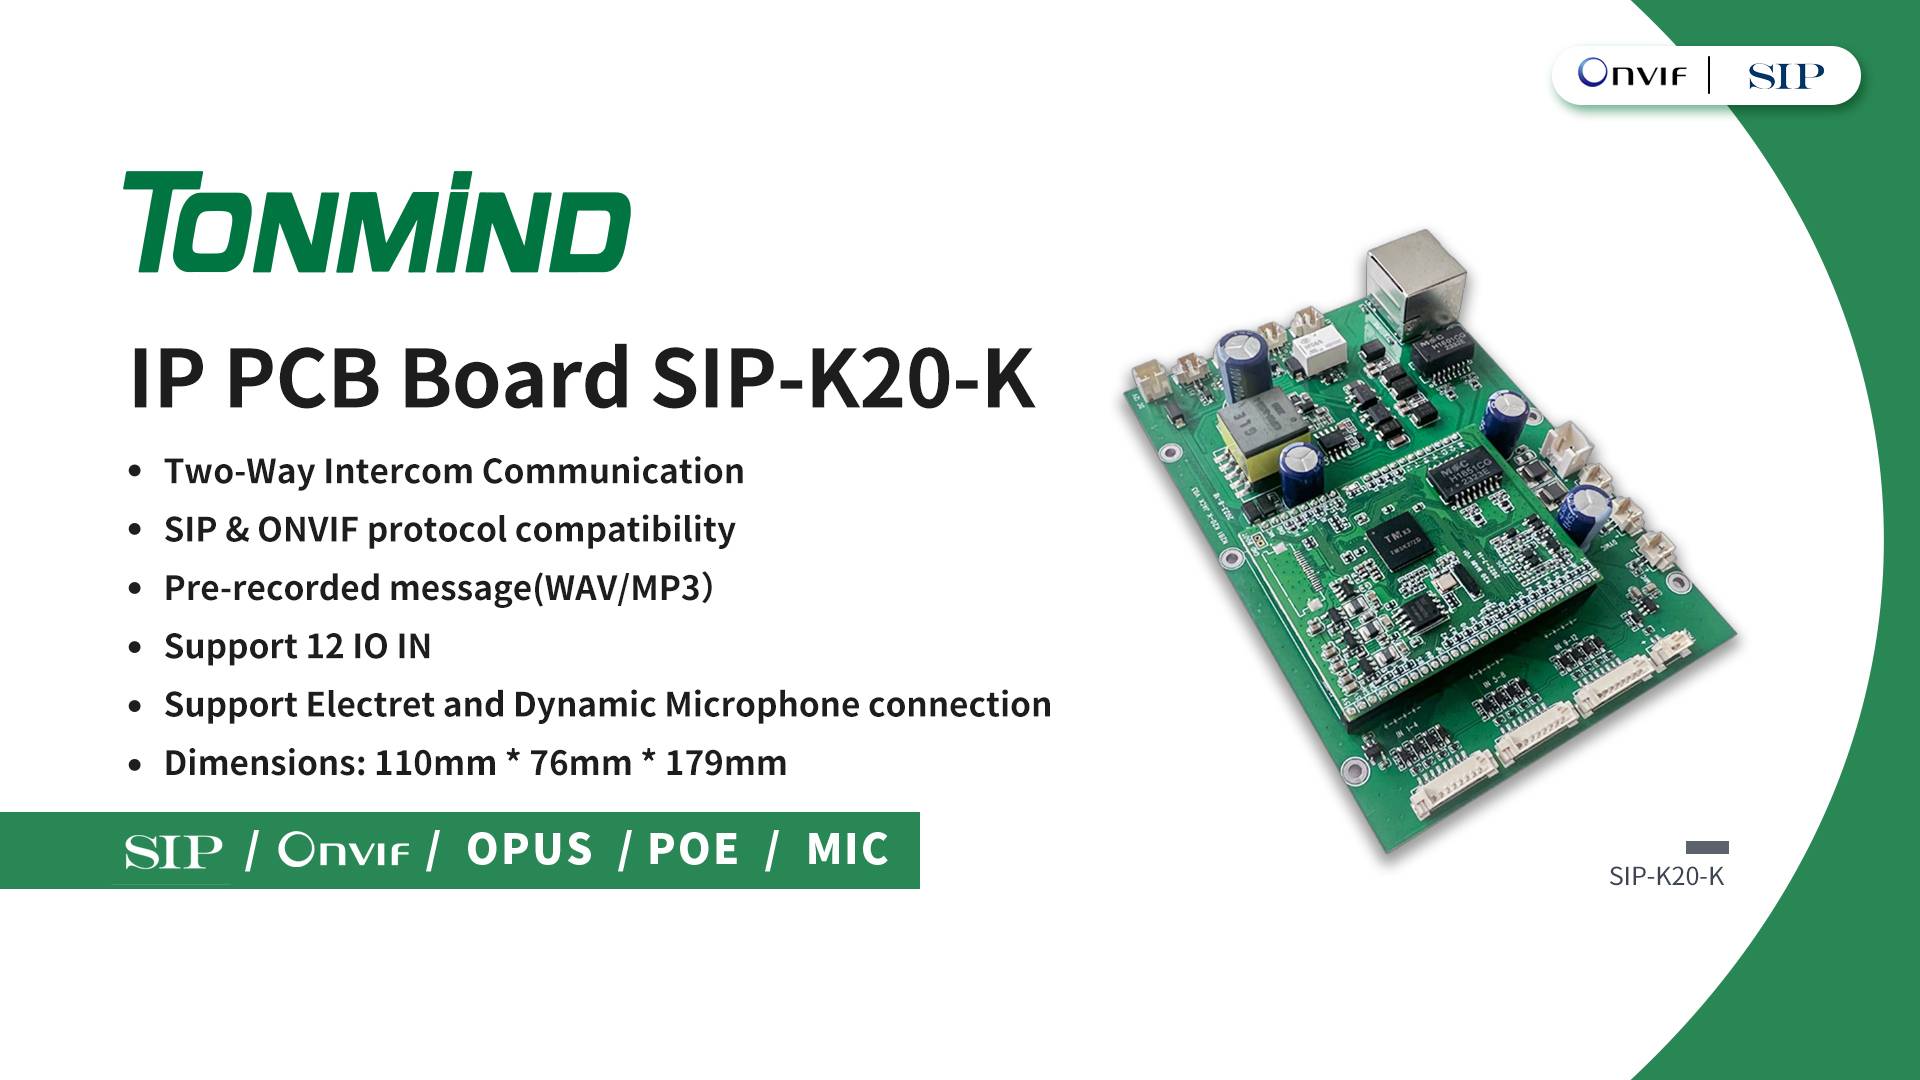 Tonmind apresenta novo produto IP PCB Board K20-K para soluções de comunicação aprimoradas